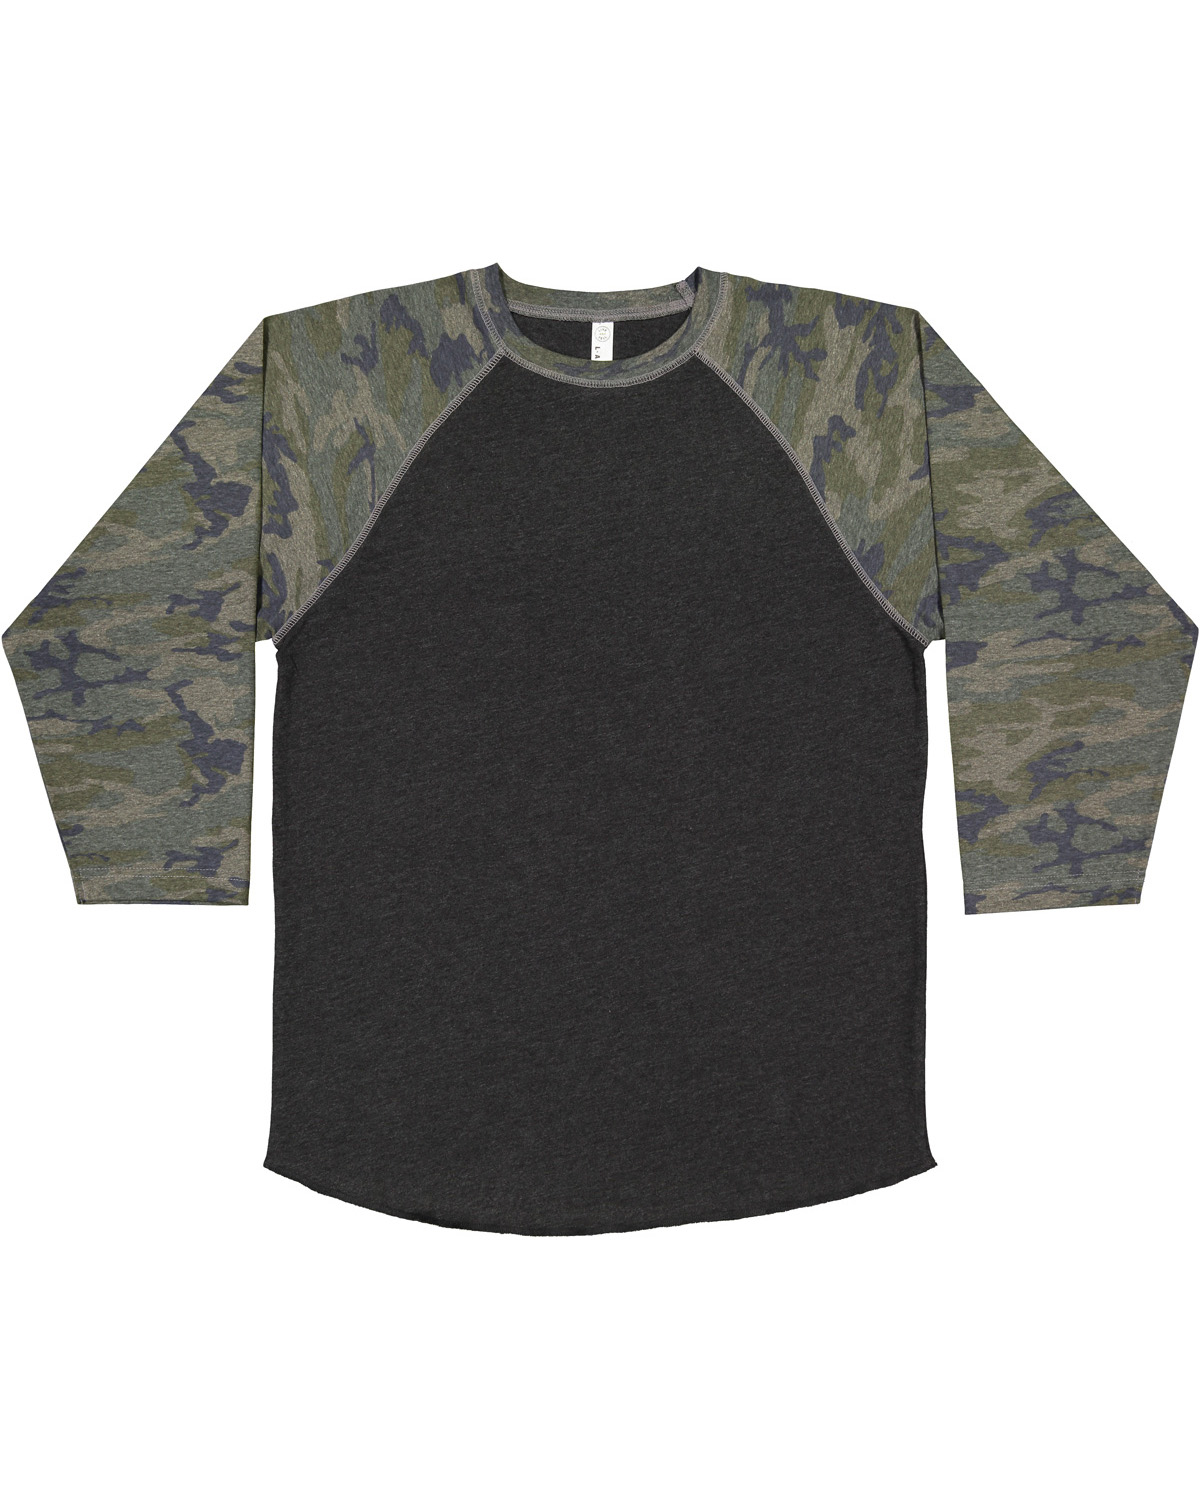 LAT 6930 - Fine Jersey 3/4 Sleeve Baseball T-Shirt $8.27 - T-Shirts